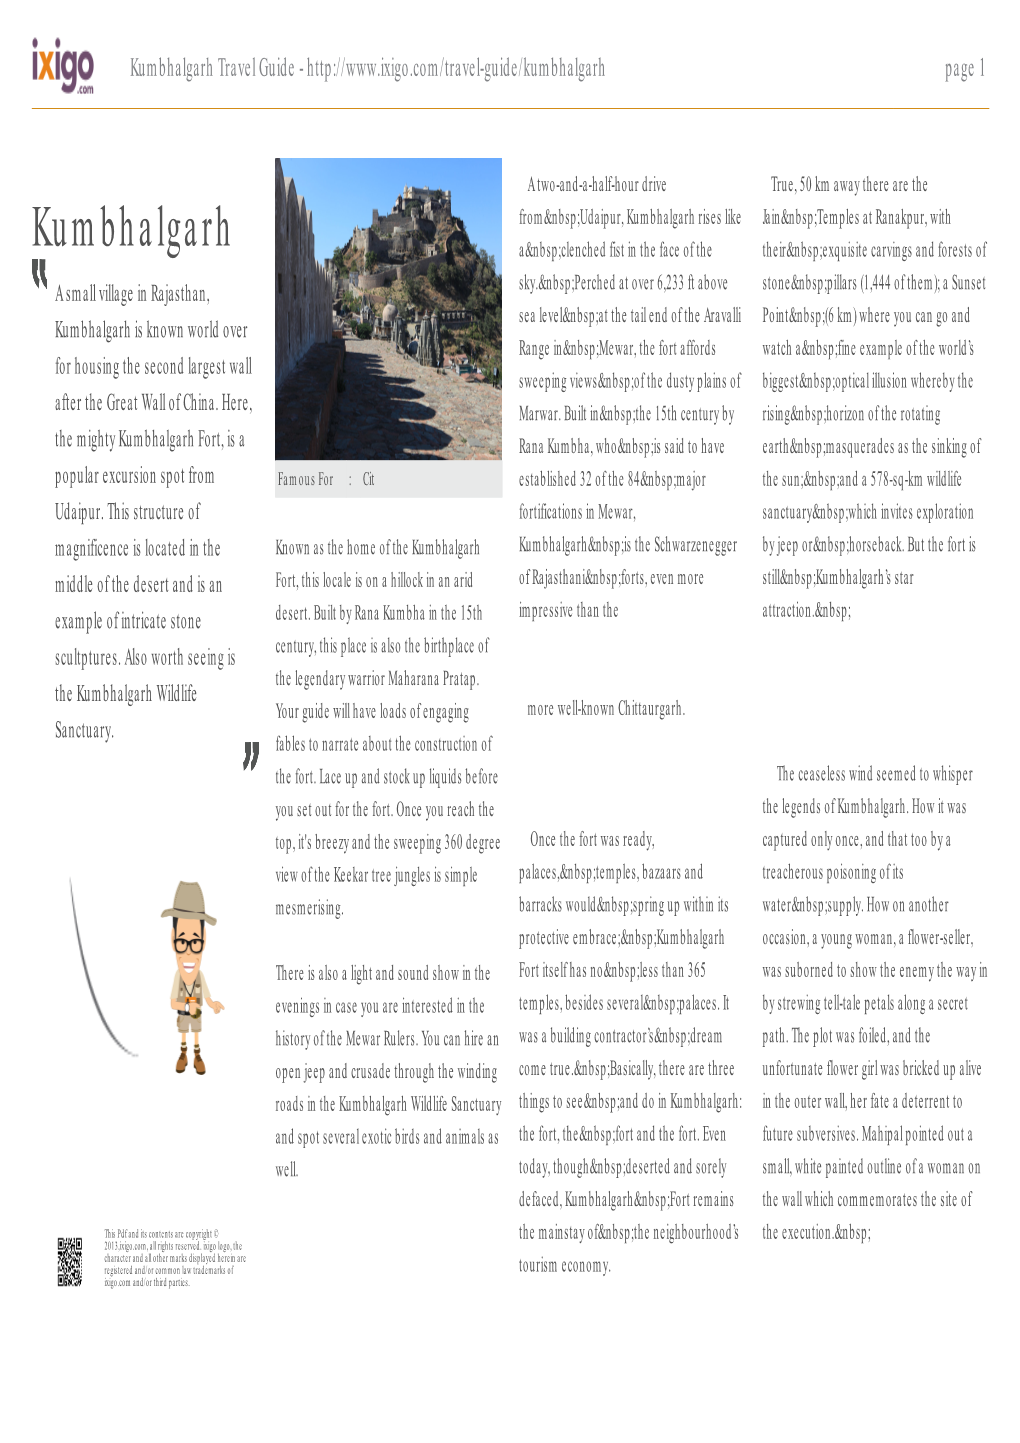 Kumbhalgarh Travel Guide - Page 1